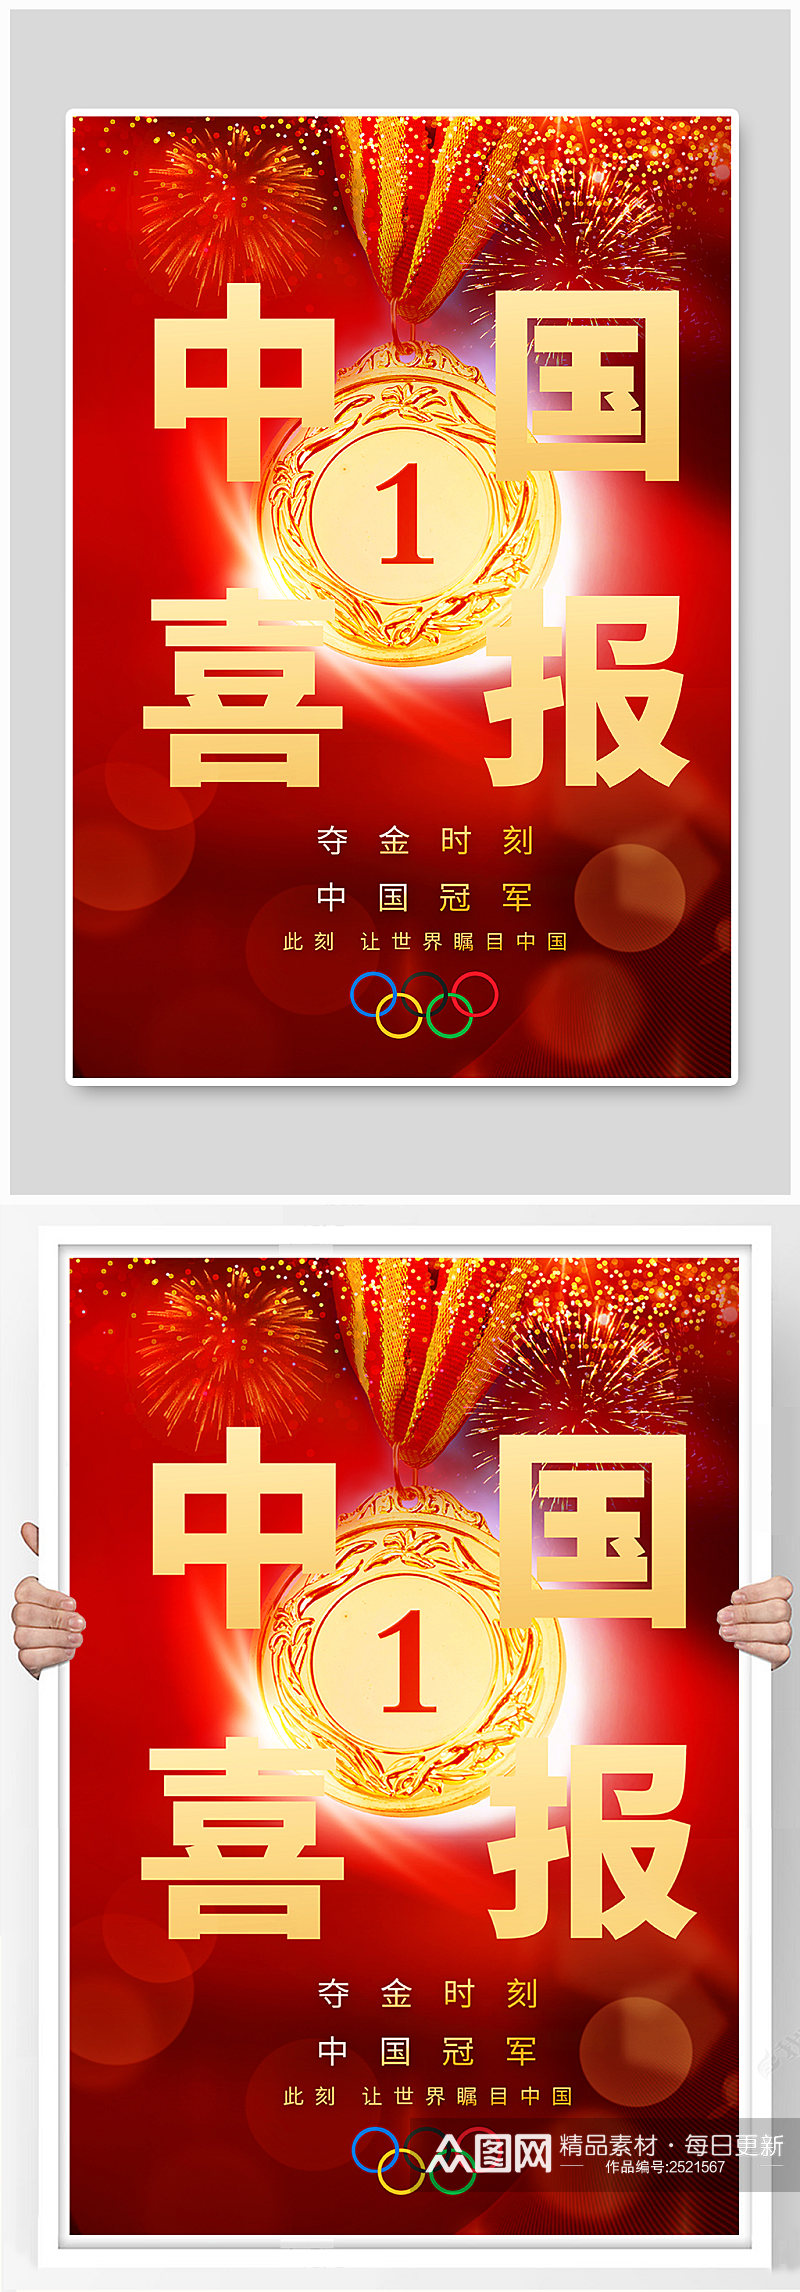 东京奥运会中国喜报创意海报素材